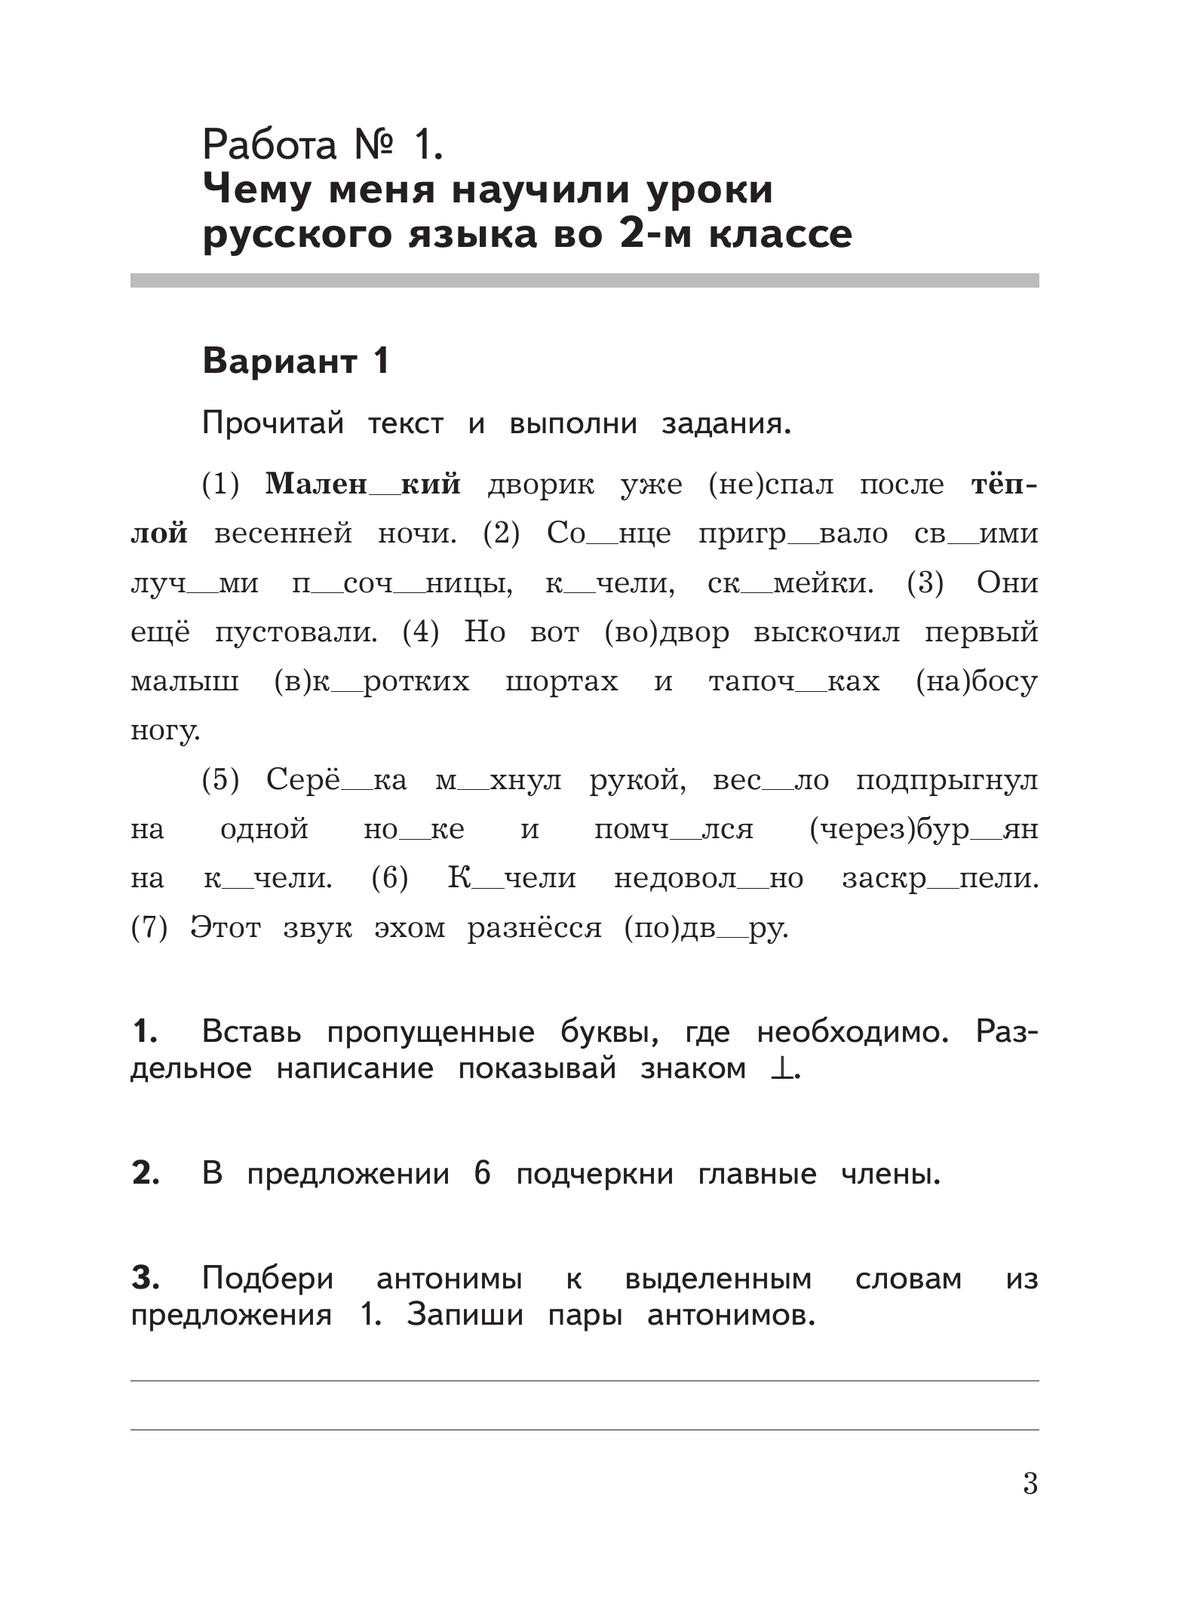 Русский язык.Предварительный контроль, текущий контроль, итоговый контроль. 3 класс 4